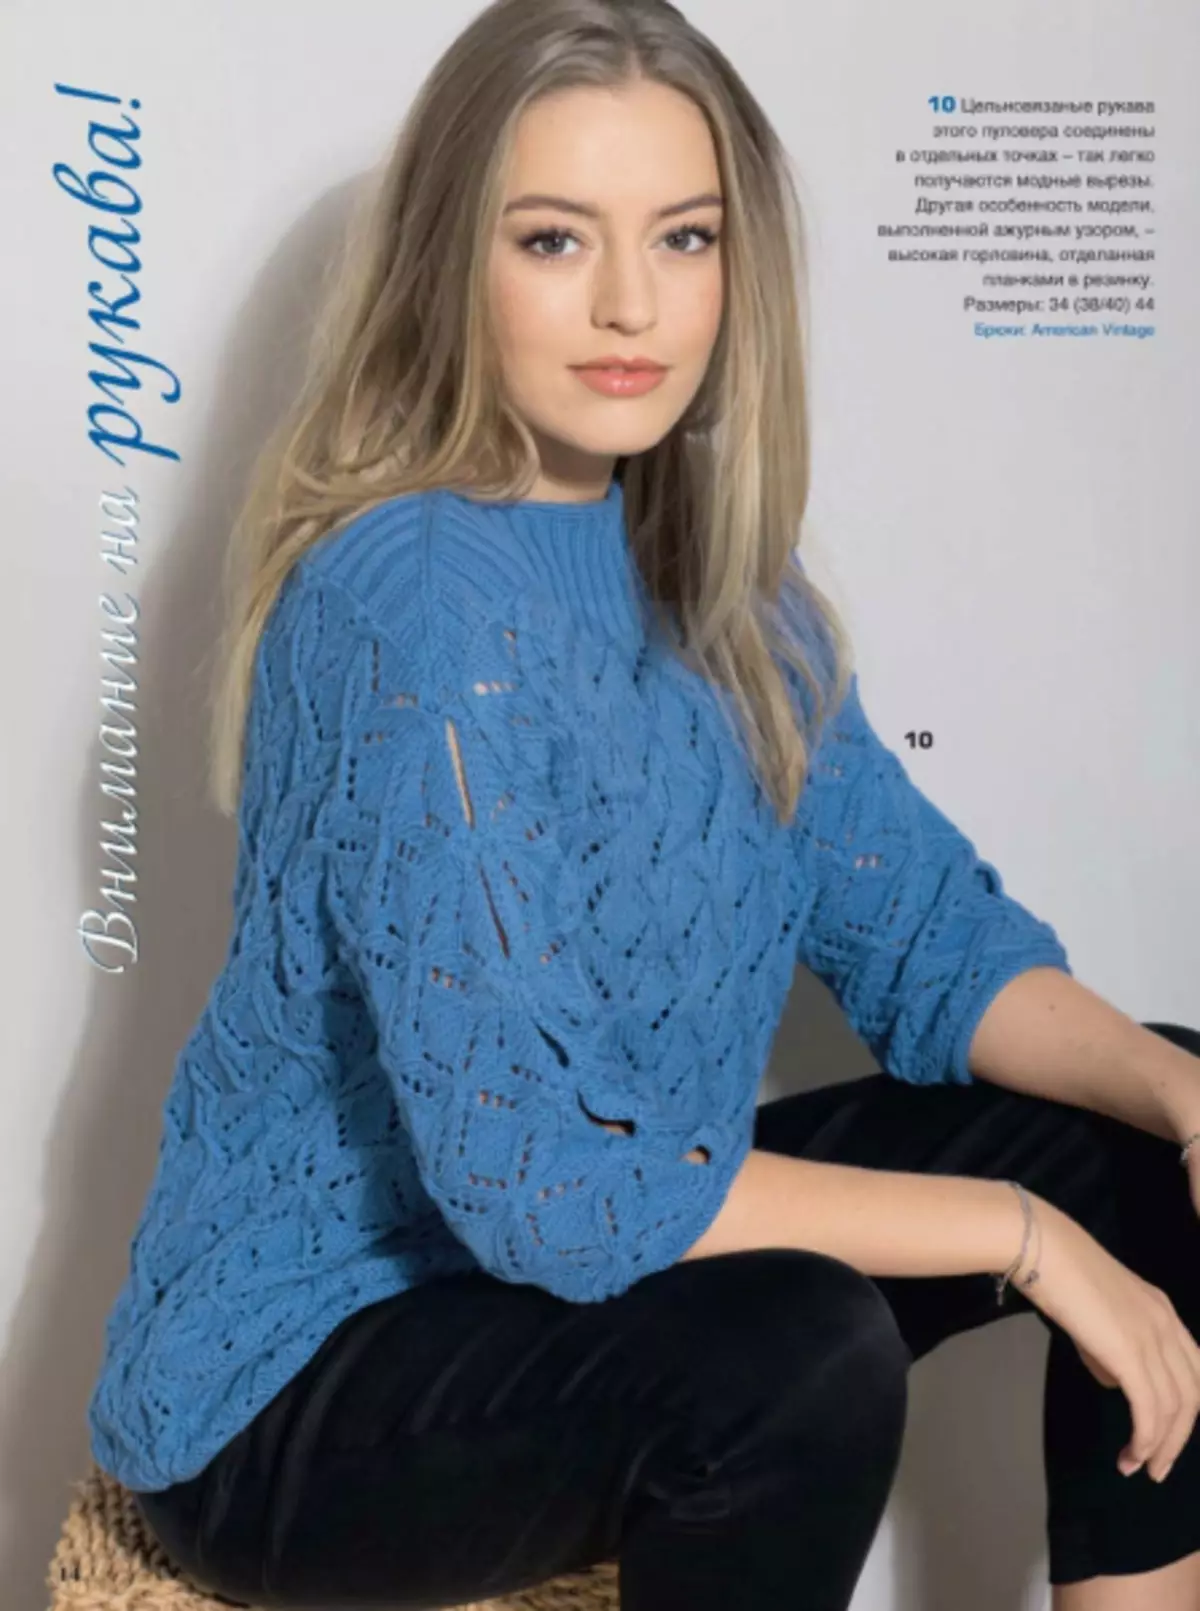 Magazin Sabrina broj 2 - 2019